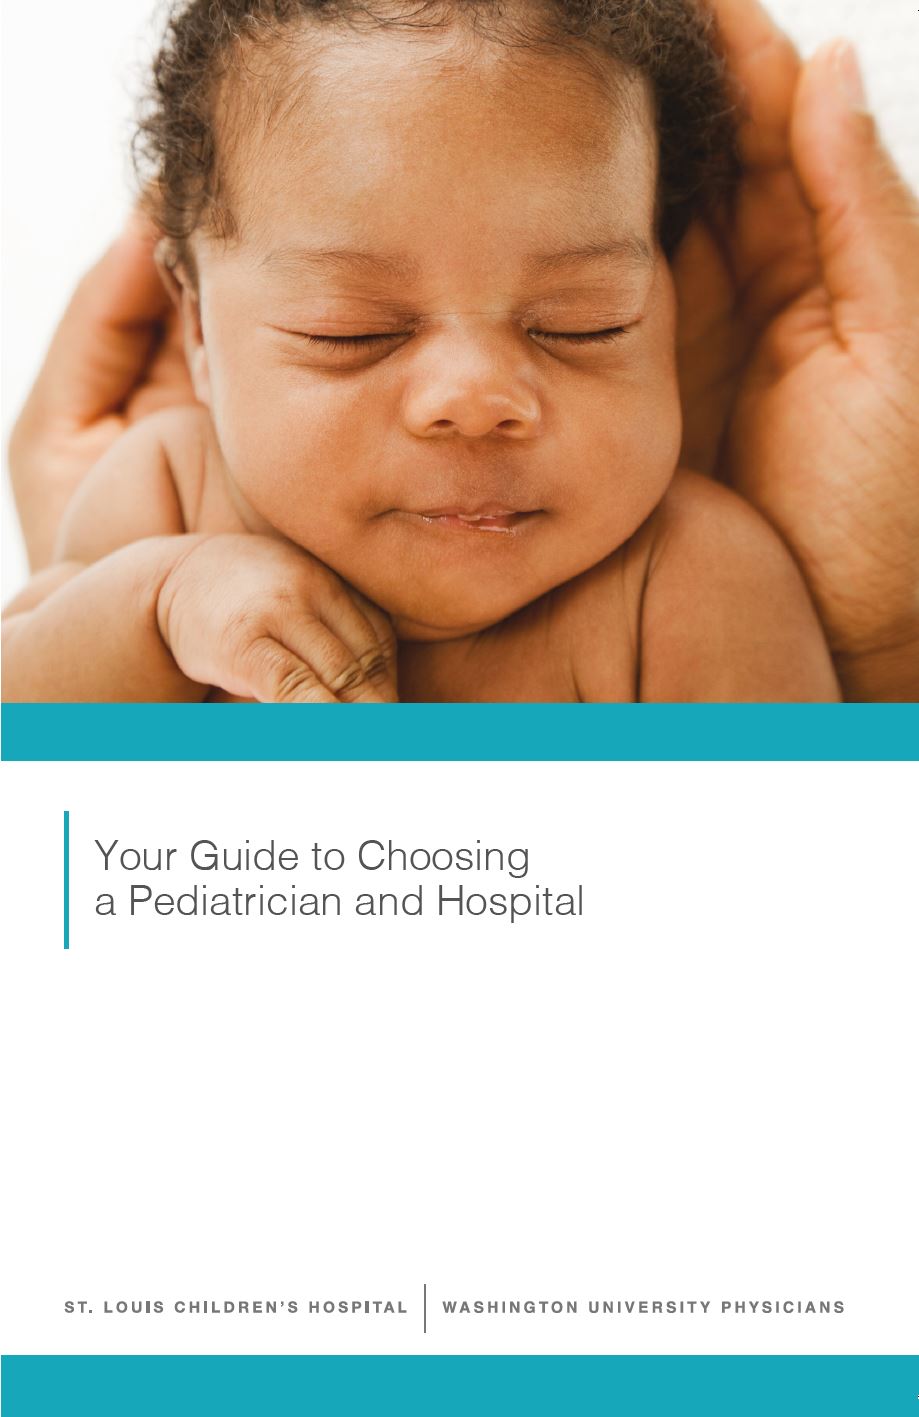 Guide to Choosing a Pediatrician